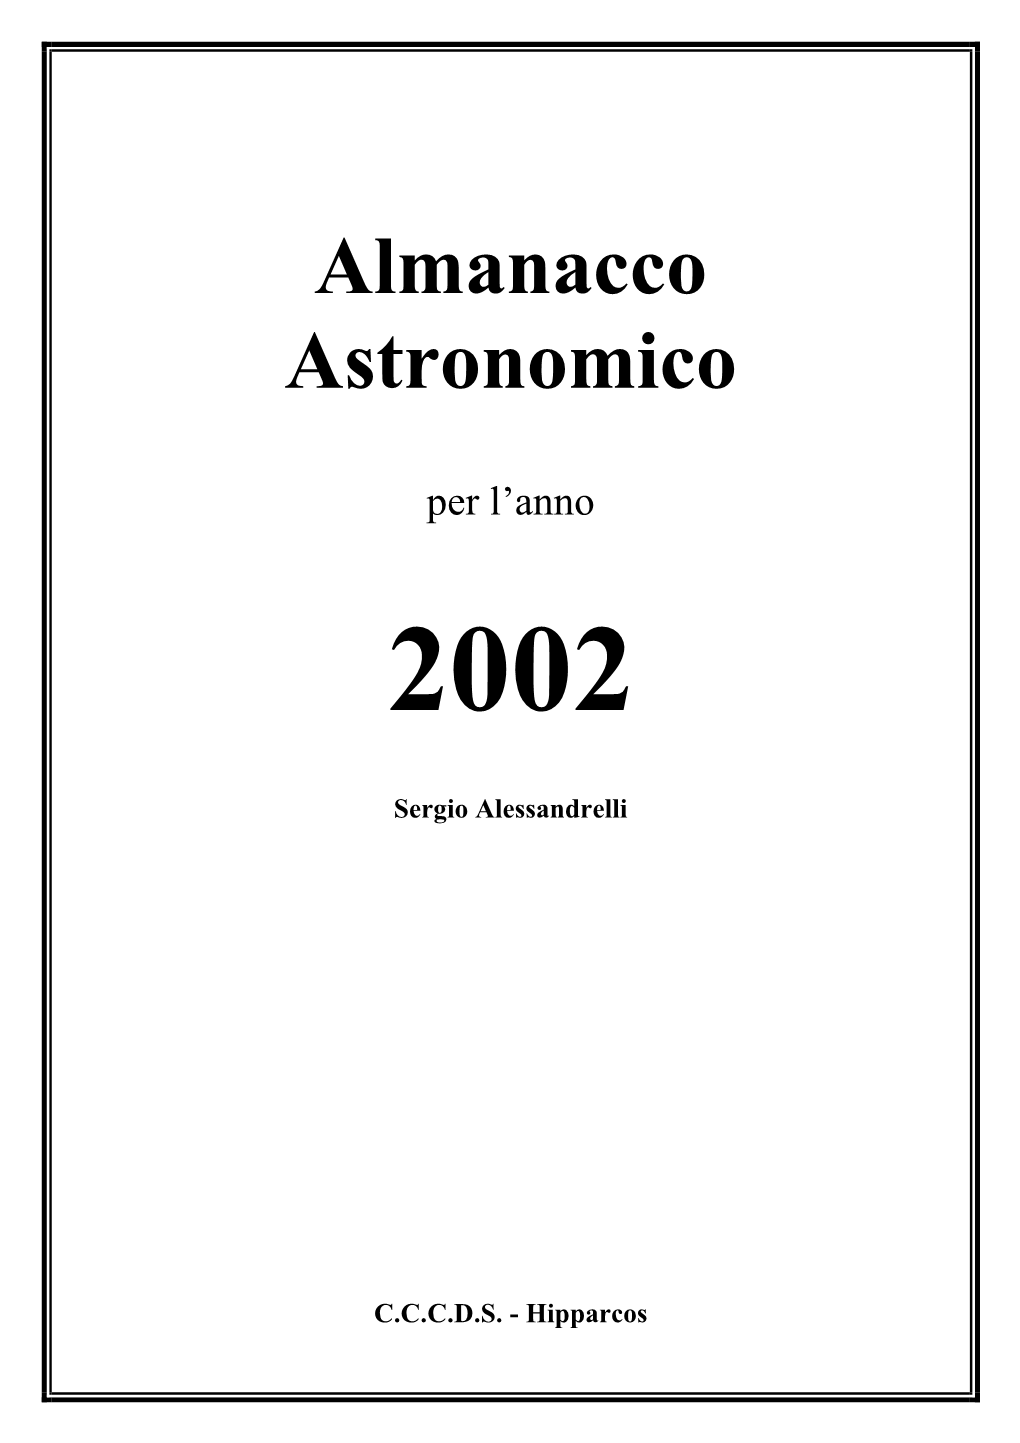 Almanacco Astronomico 2002 – Introduzione